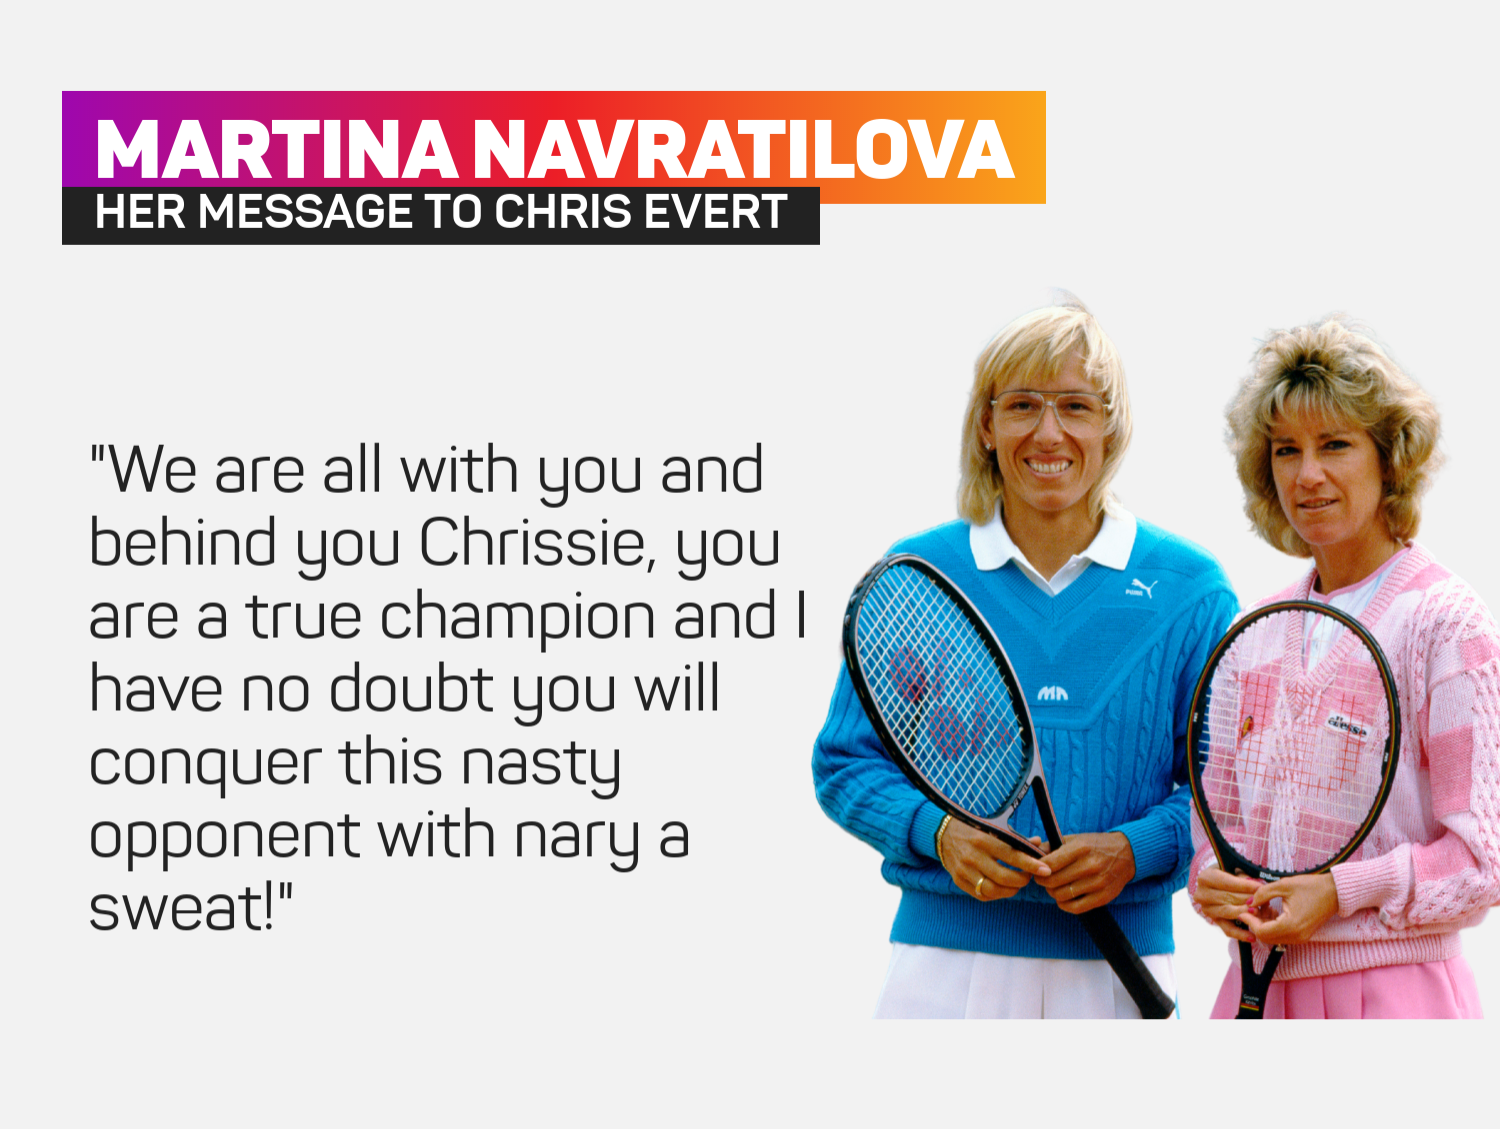 Martina Navratilova and Chris Evert